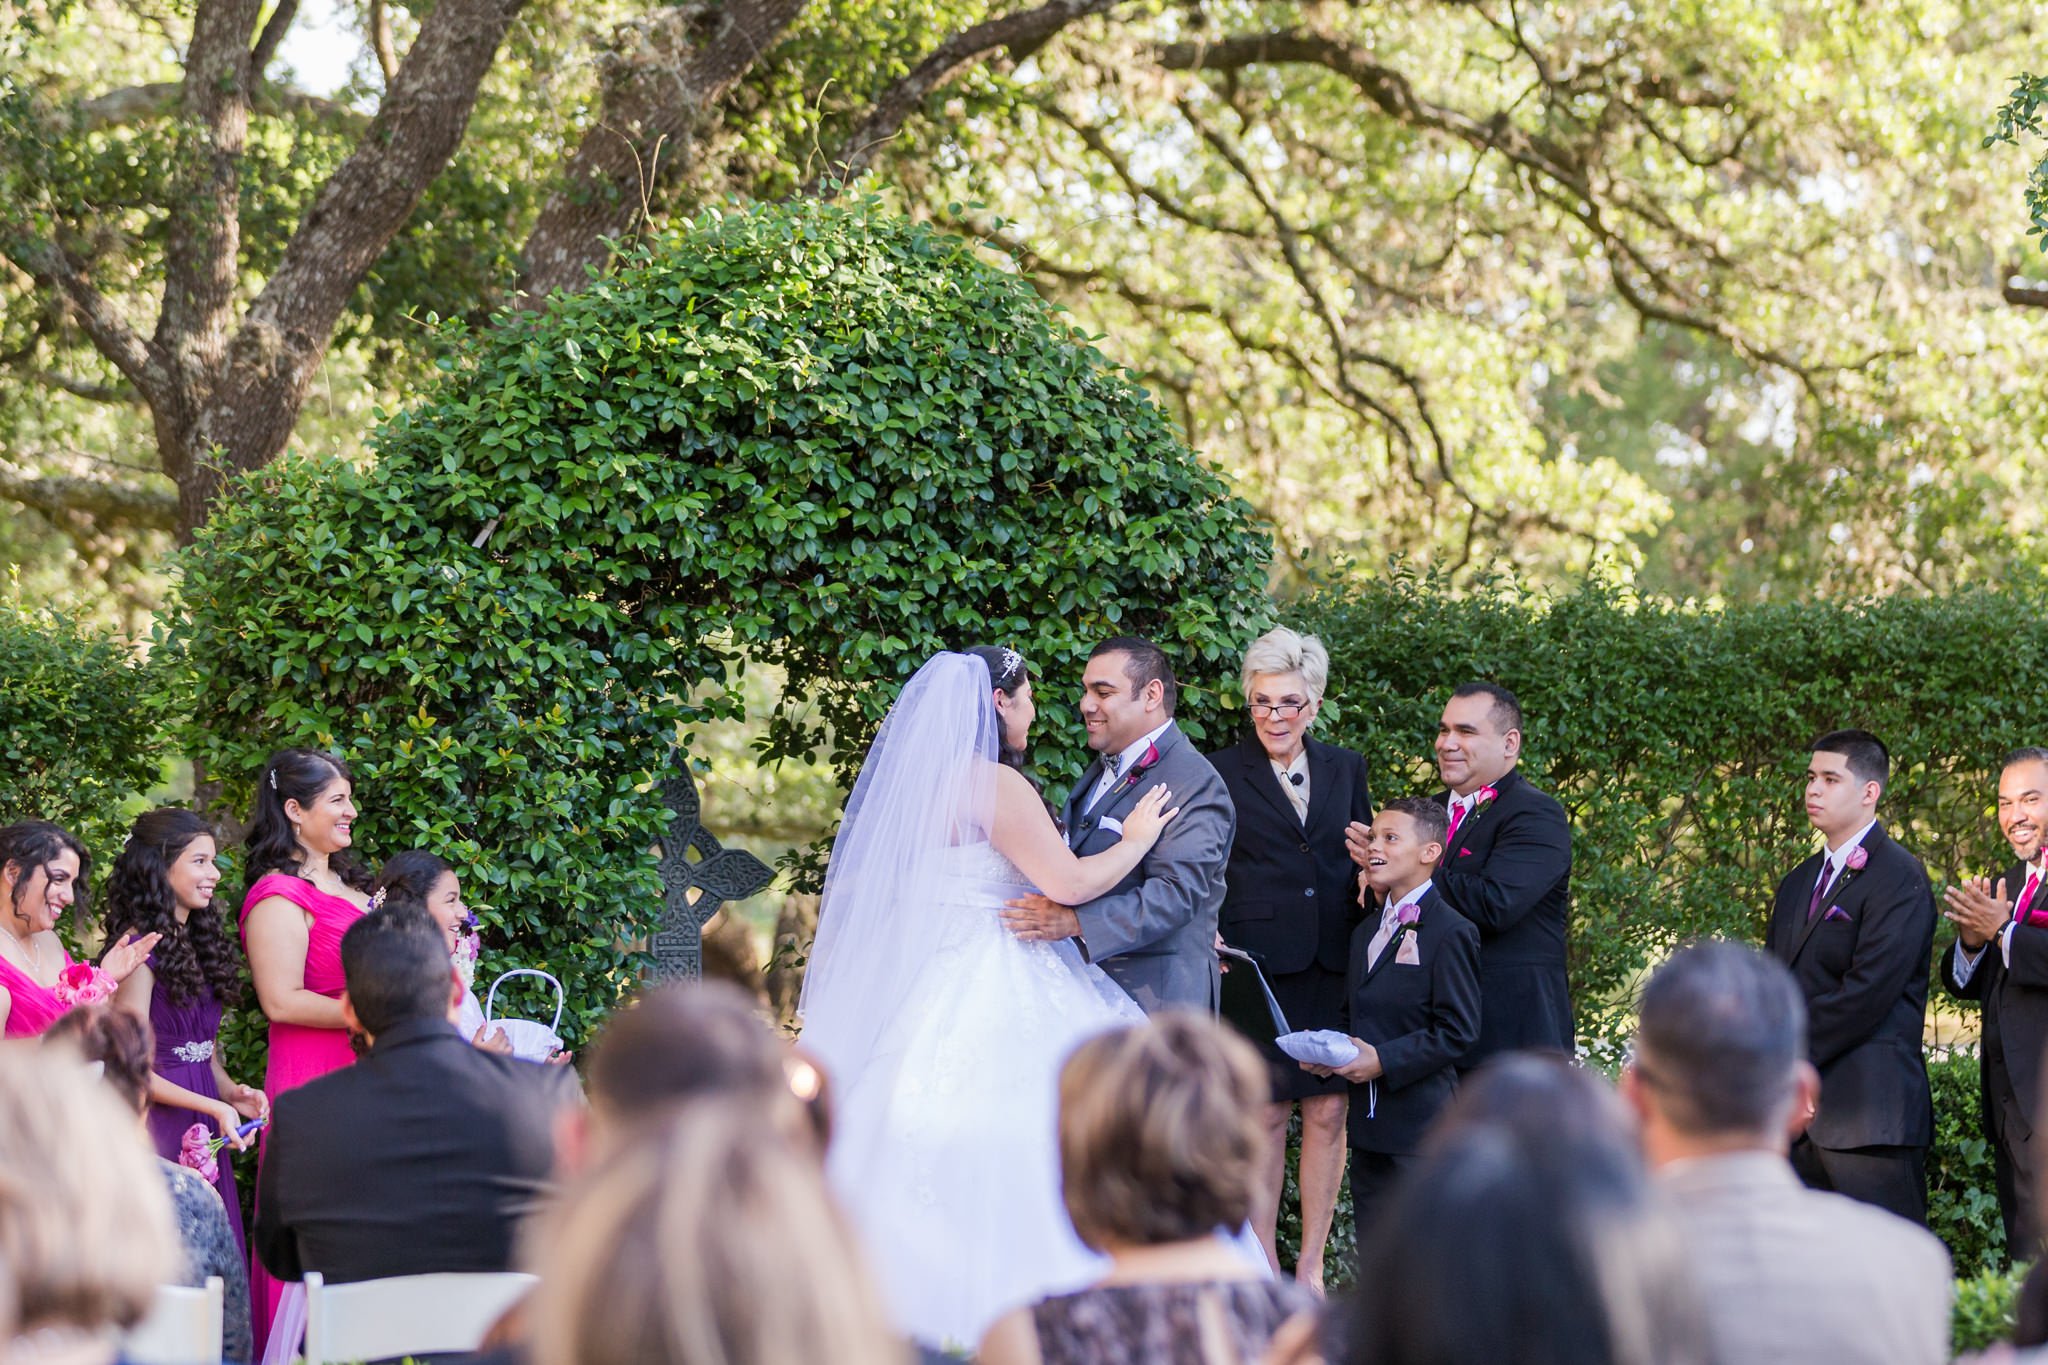 A Disney Inspired Wedding at Castle Avalon in New Braunfels, TX by Dawn Elizabeth Studios, San Antonio Wedding Photographer